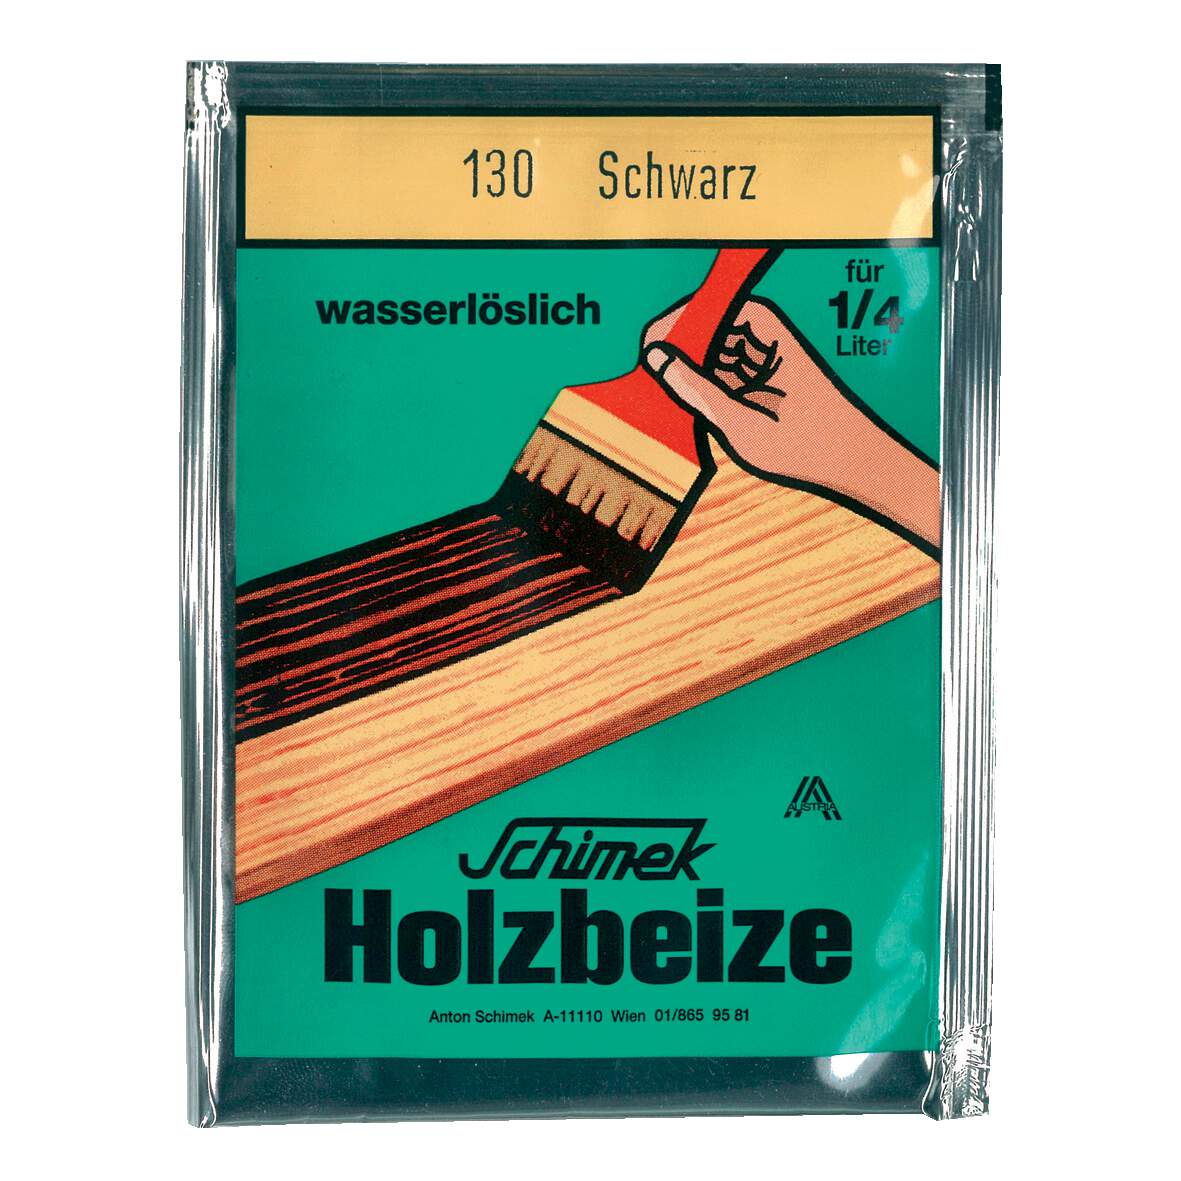 1216619 - Holzbeize wasserlöslich